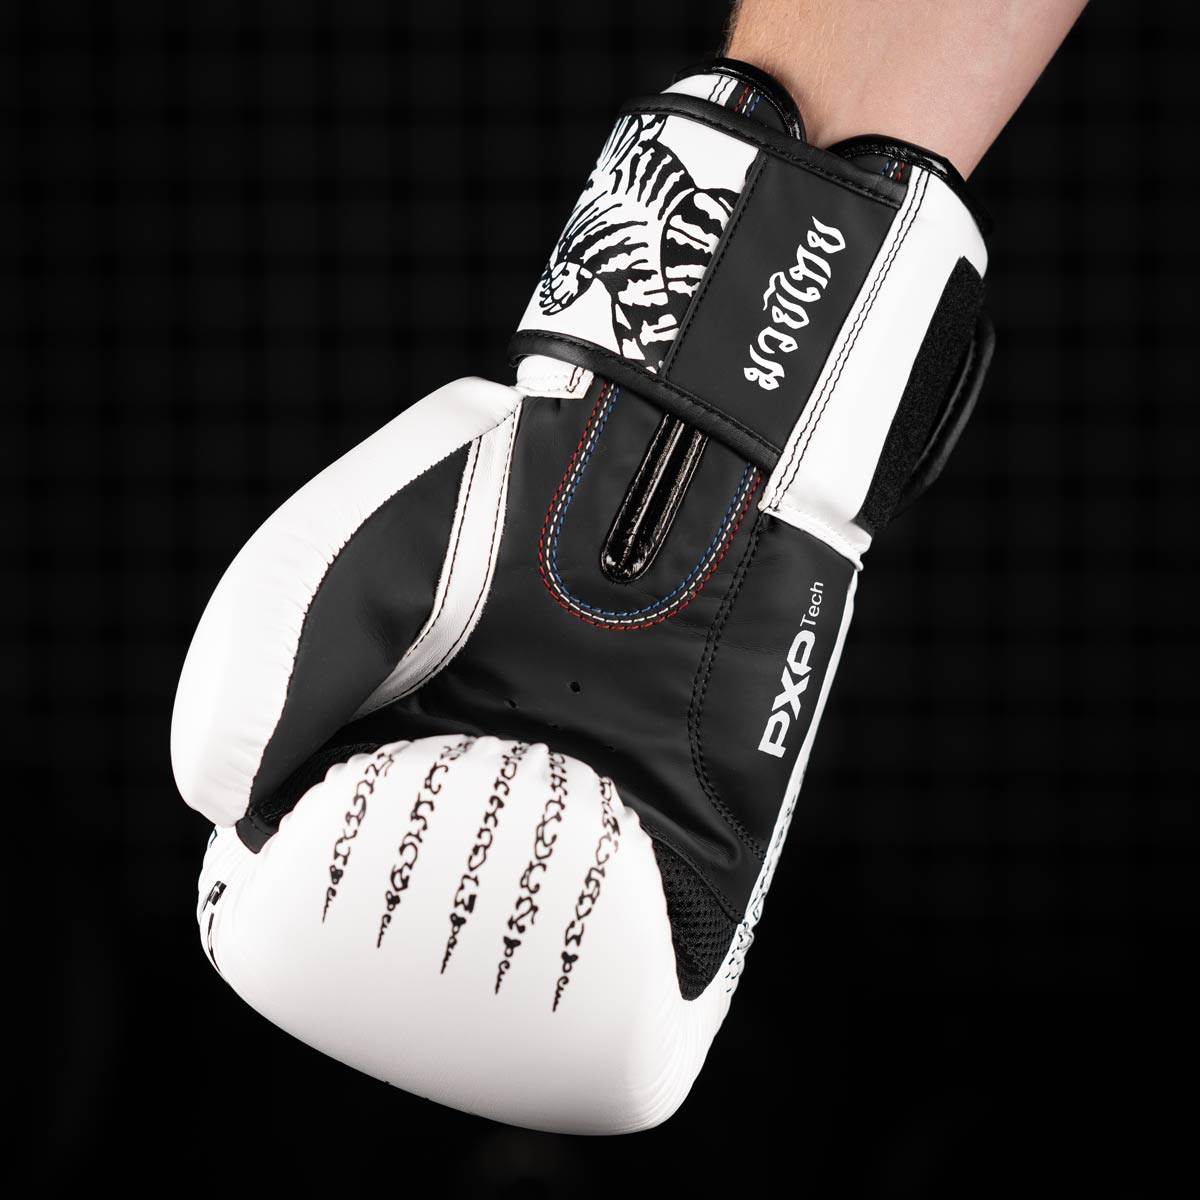 Die Phantom Muay Thai Boxhandschuhe in Weiss verfügen über einen Mesh Einsatz an der Handinnenfläche für eine optimale Belüftung beim Training.